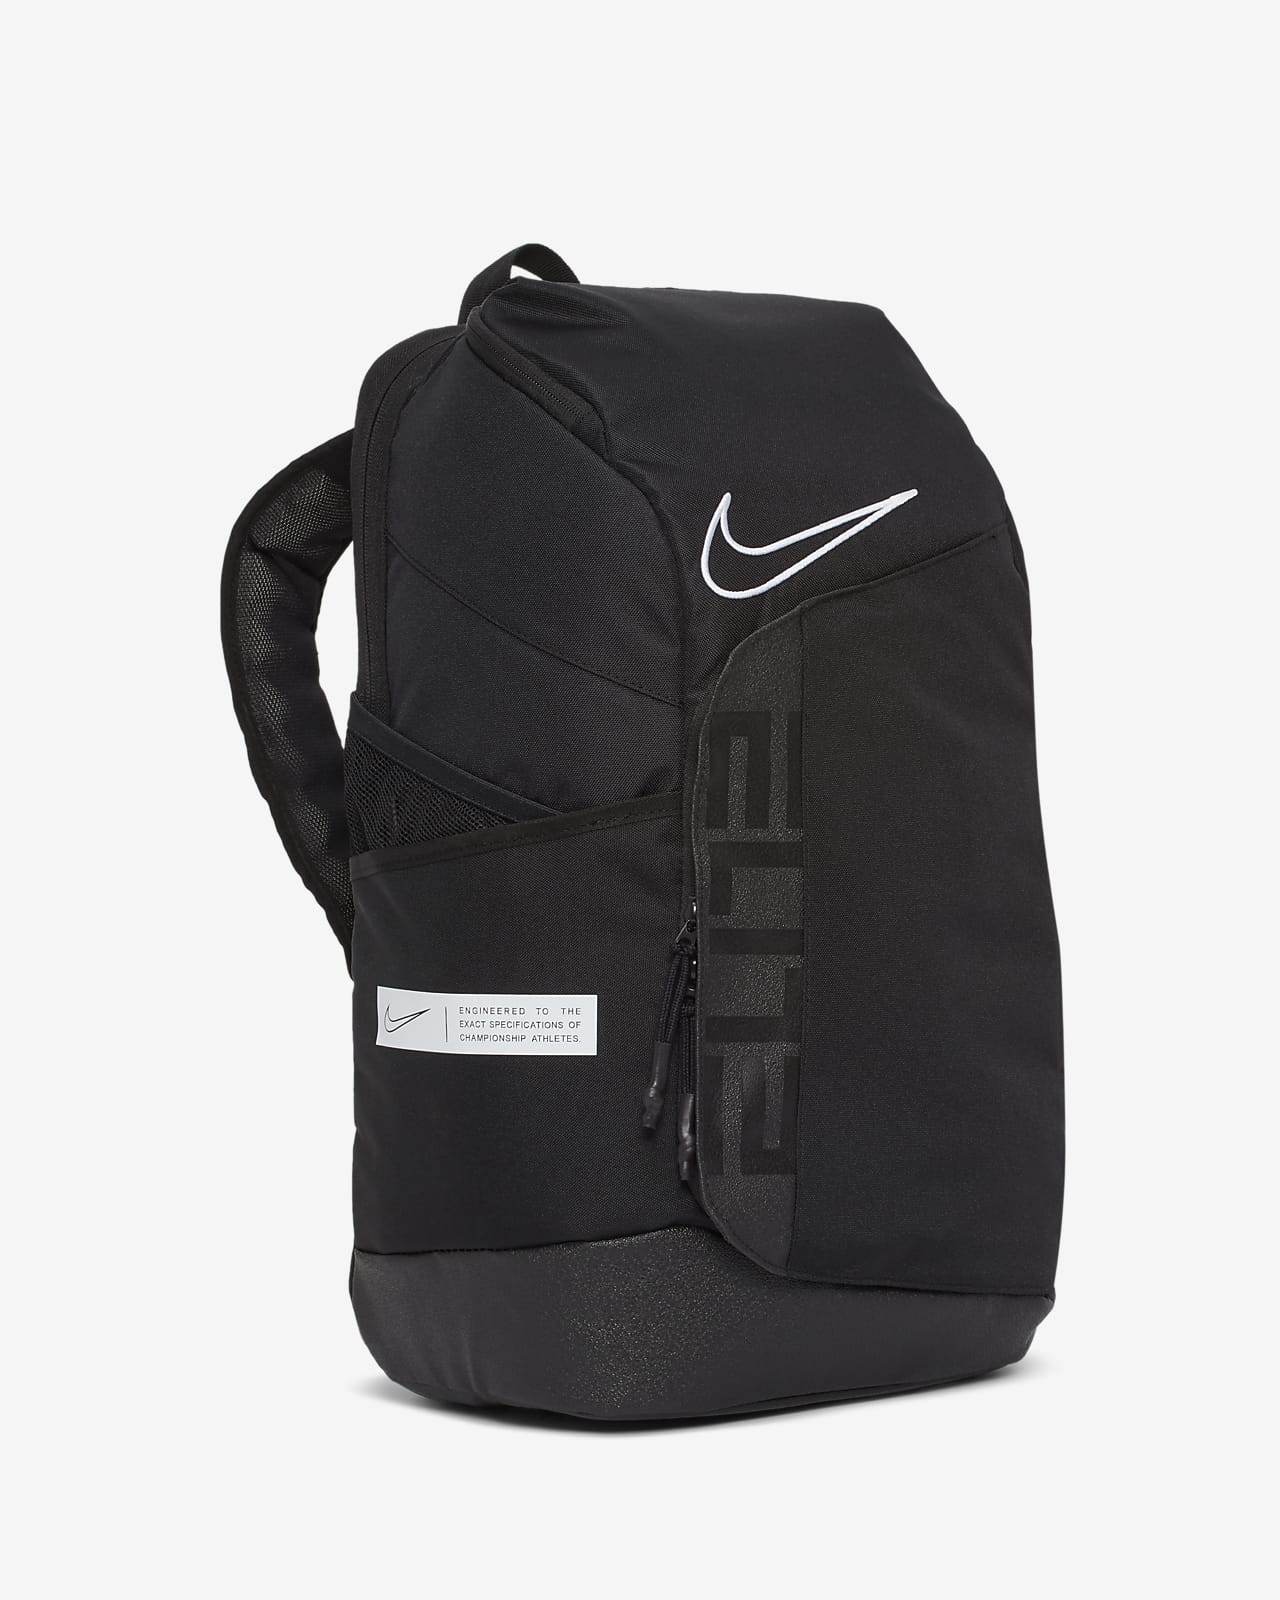 nike elite backpack canada